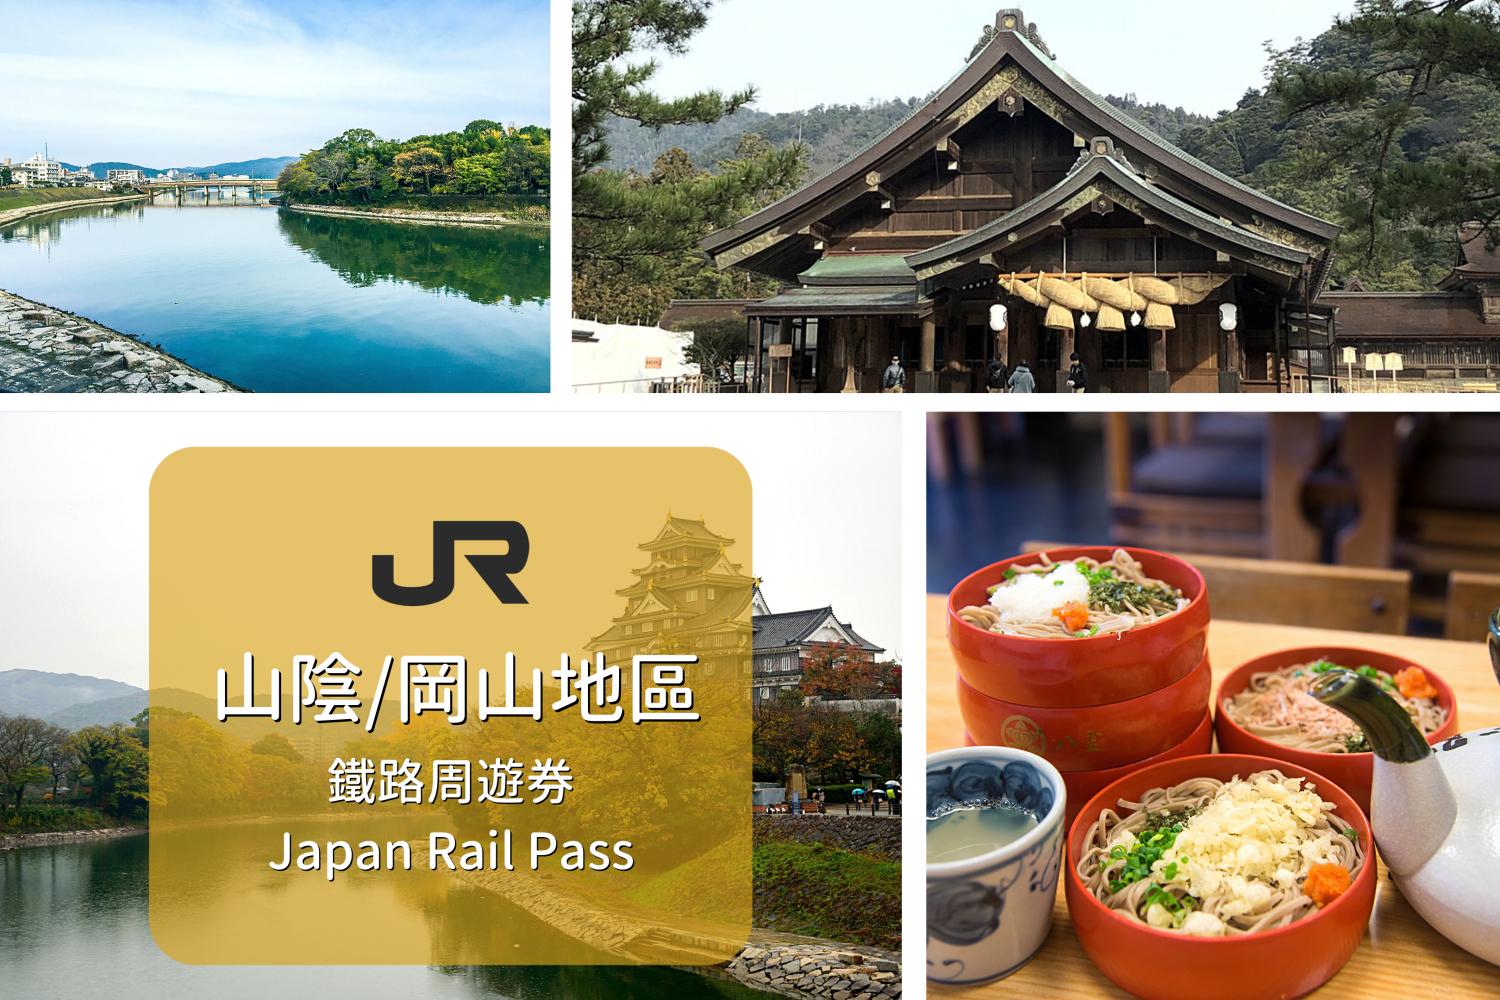 【日本JR Pass】山陰 & 岡山區鐵路周遊券 | 電子票 (4日)